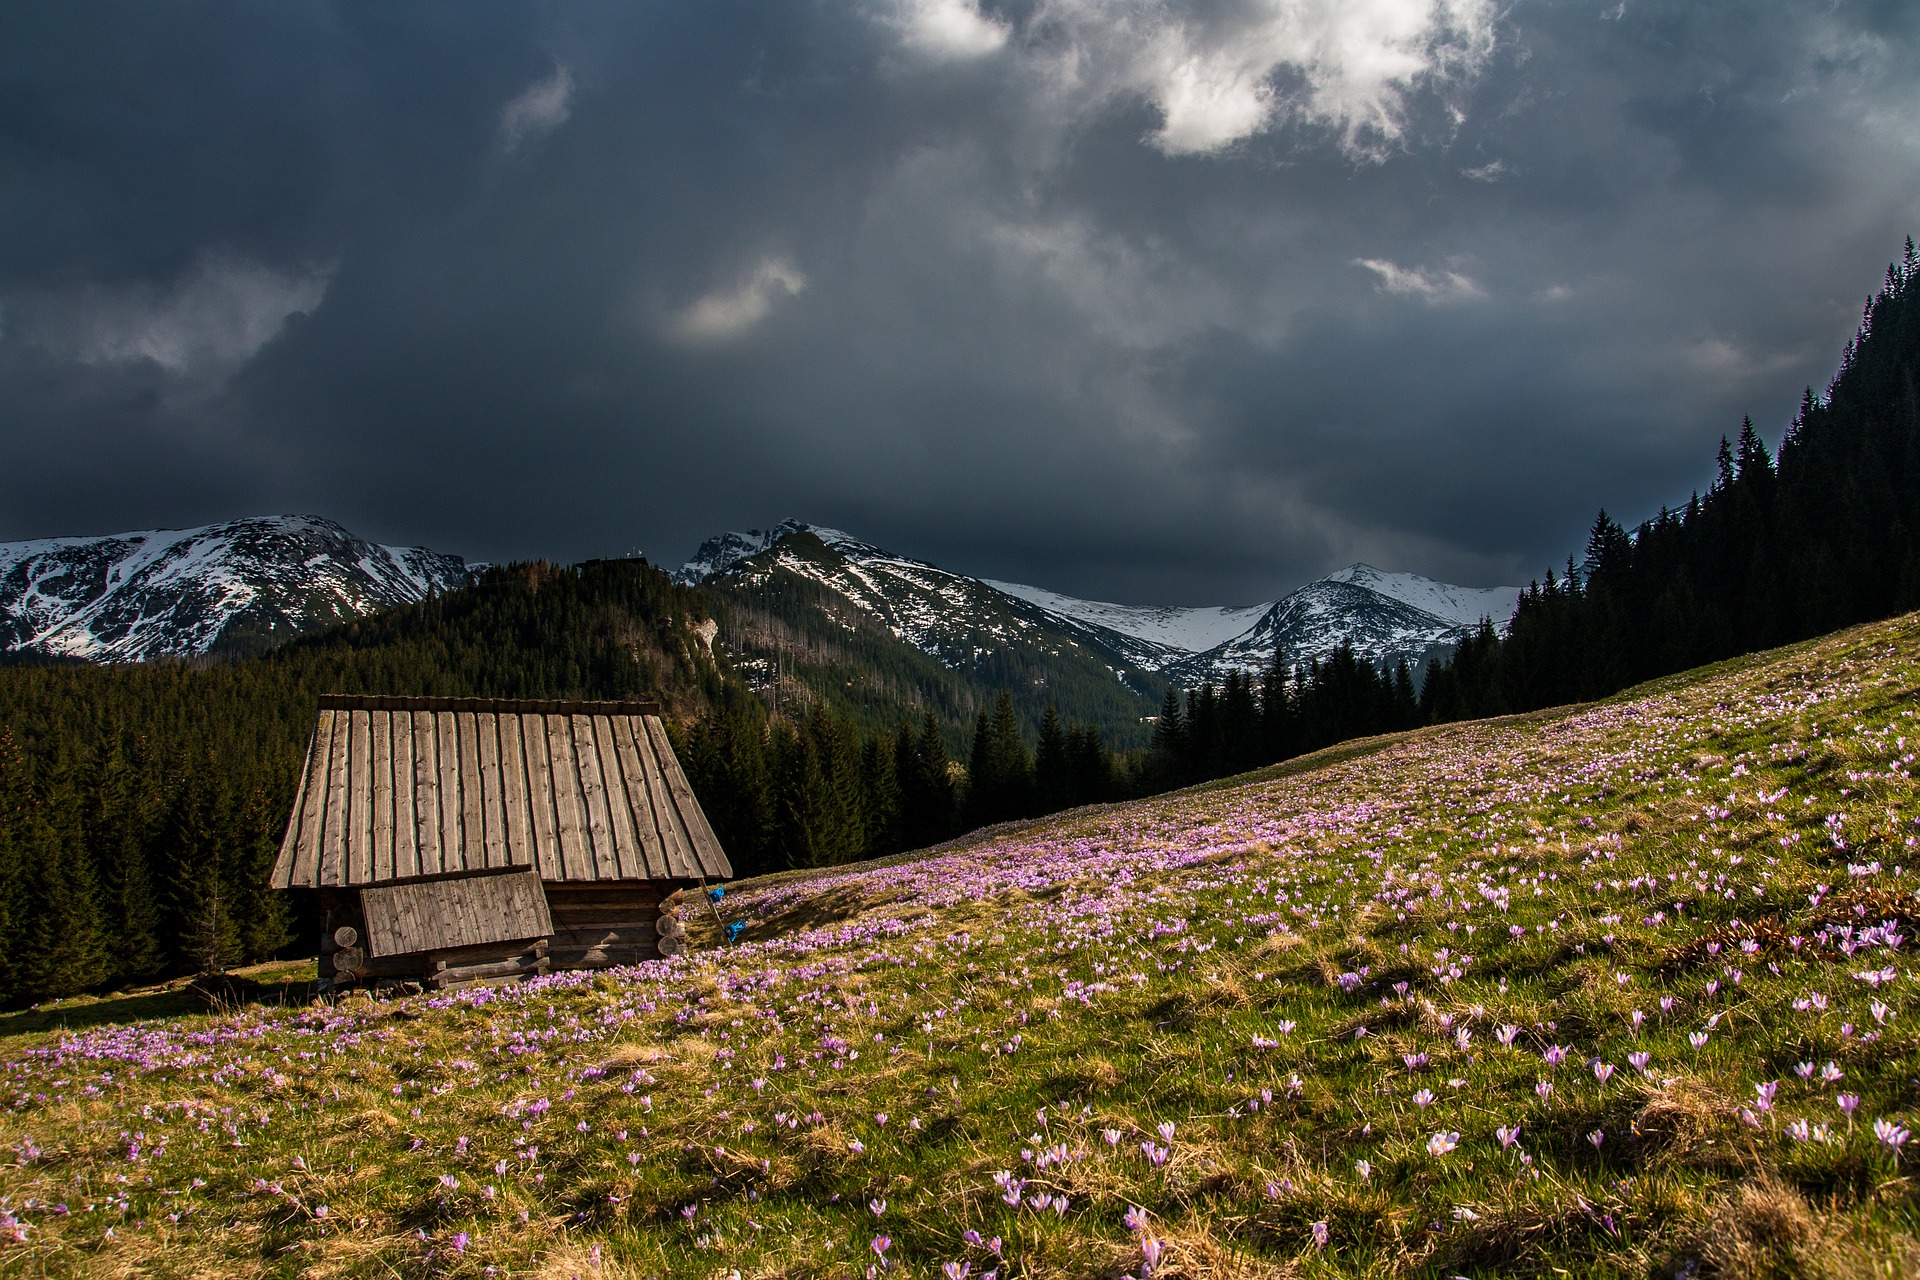 Hut on the mountain photo